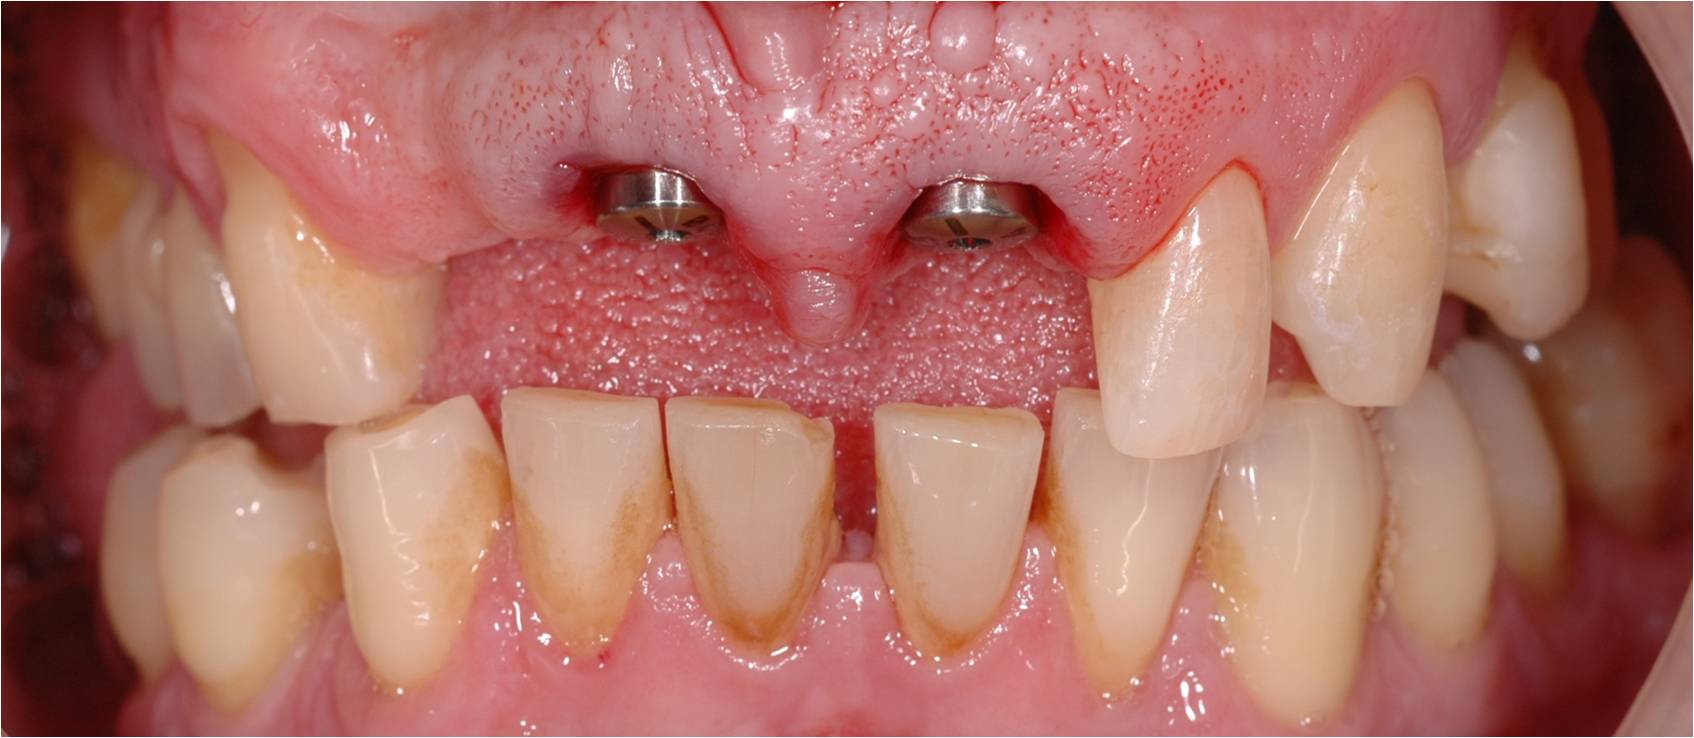 Geniet Wantrouwen blozen Een tand vervangen d.m.v. één implantaat door tandarts Philippe Nuytens